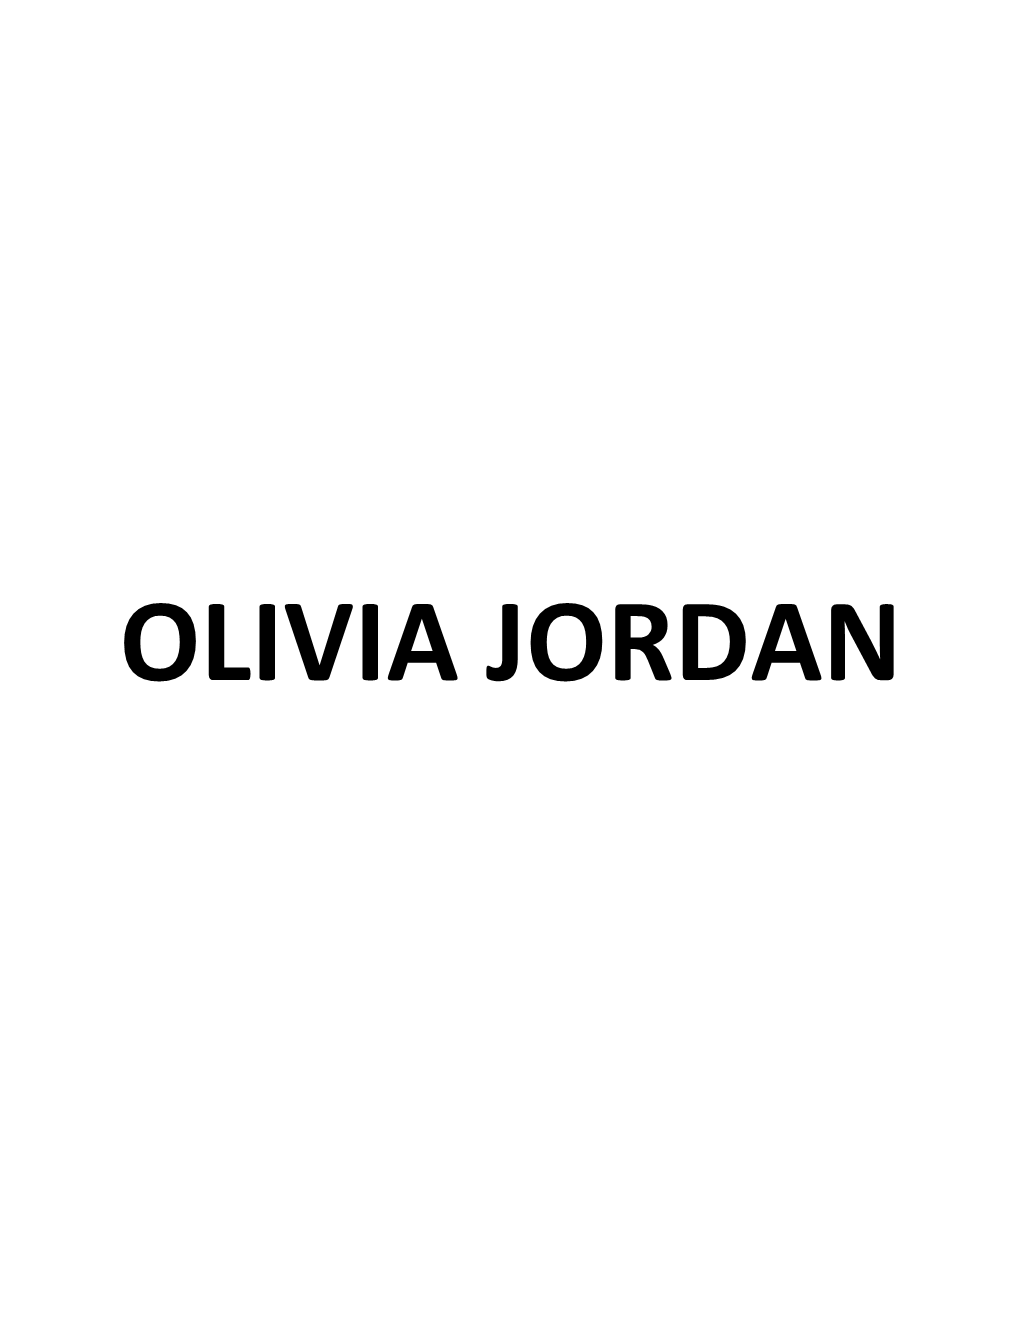 Olivia Jordan